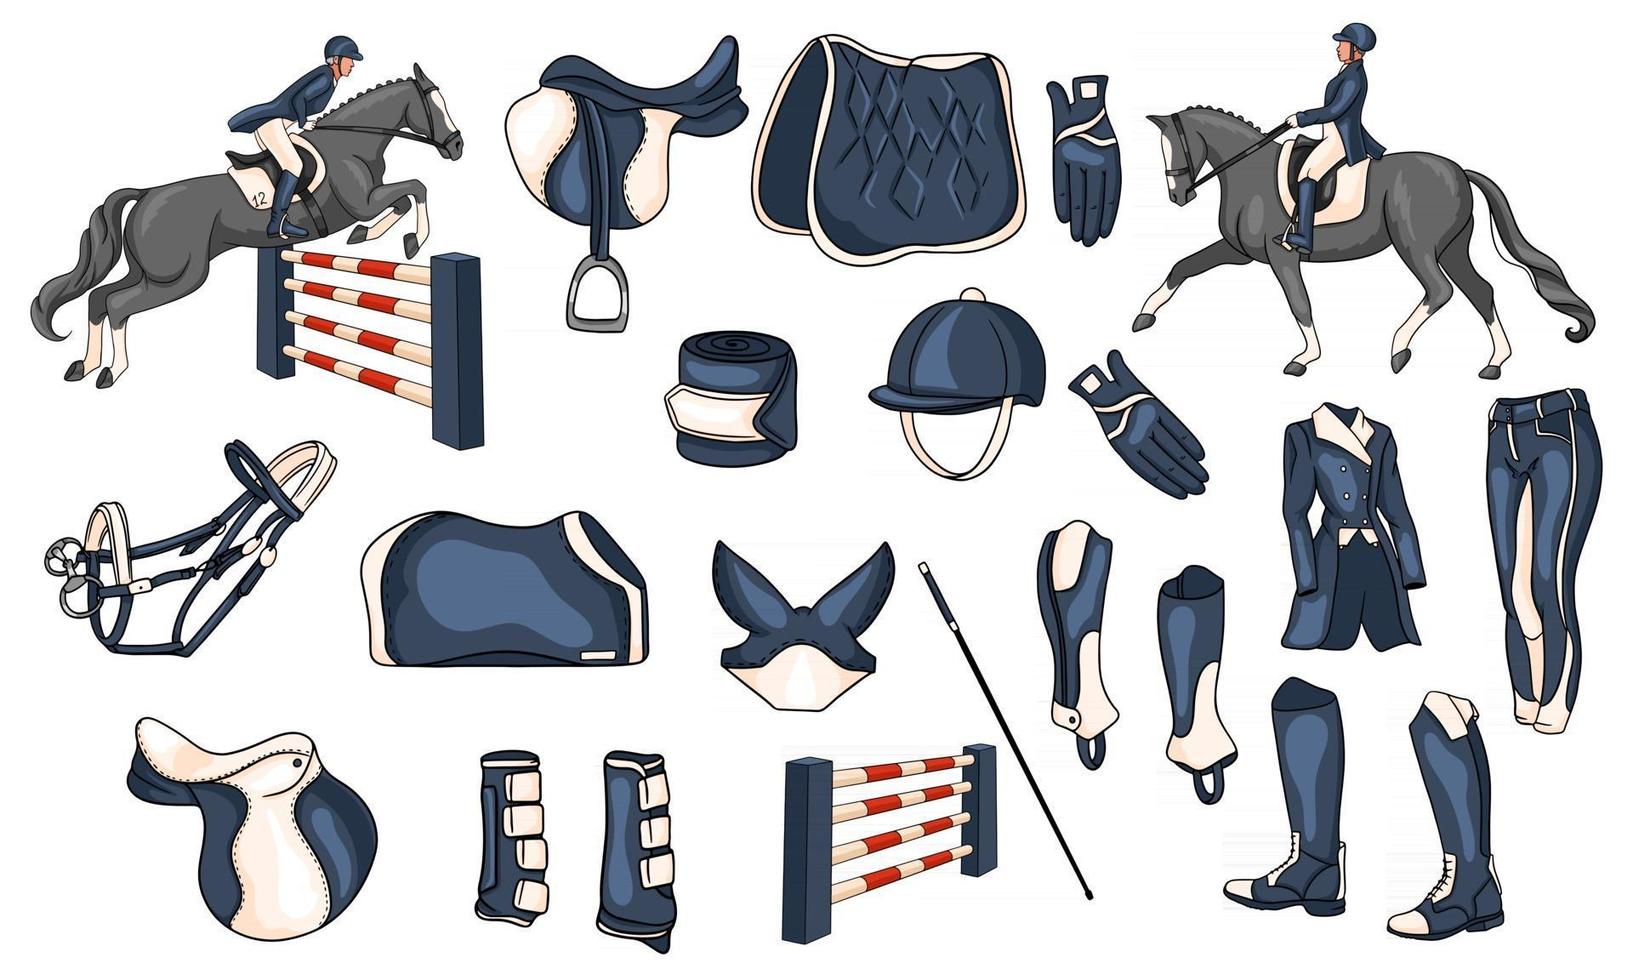 grote set uitrusting voor de ruiter en munitie voor de ruiter op paardillustratie in cartoonstijl vector